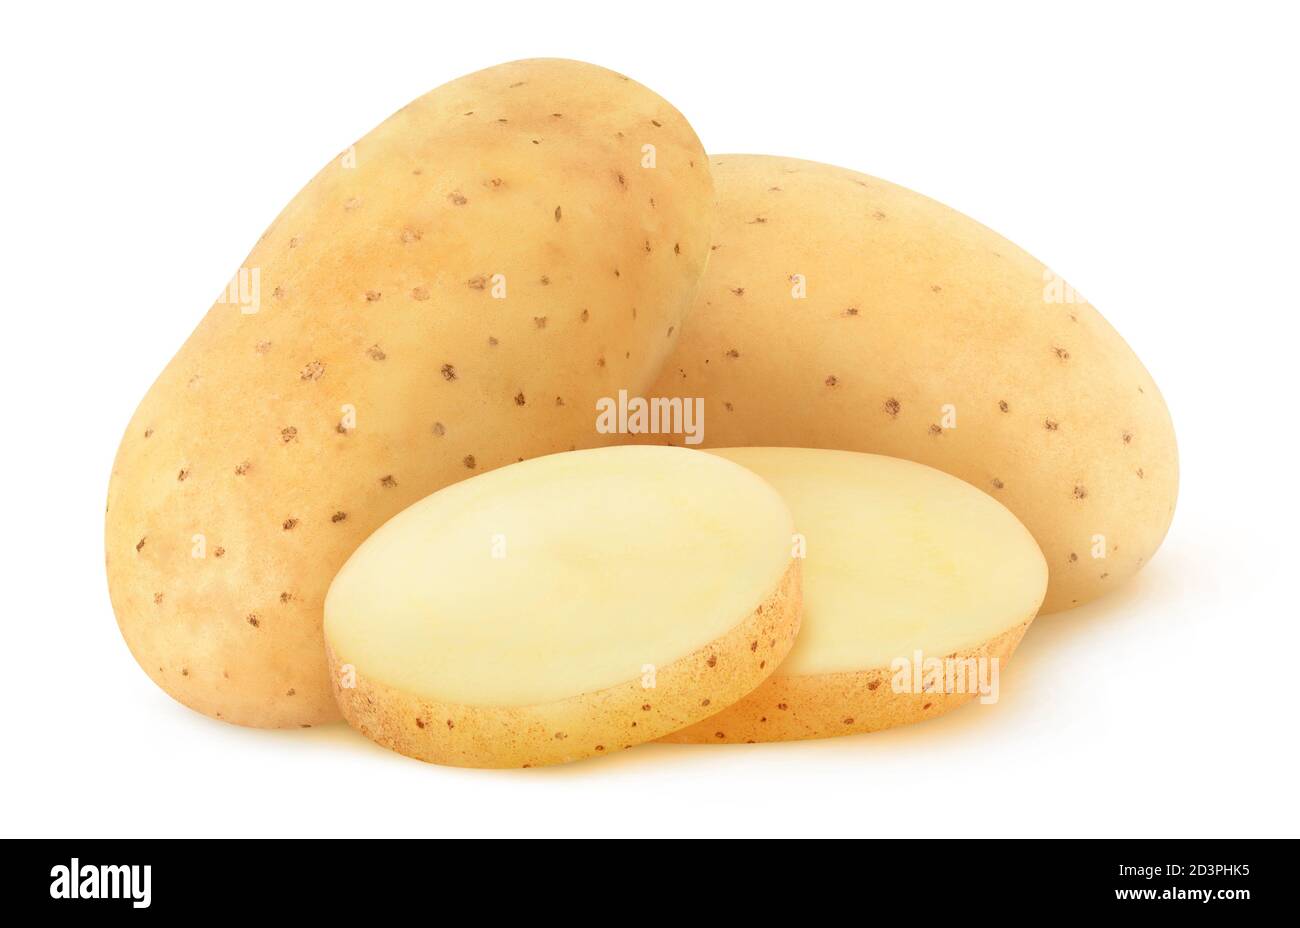 Isolierte Kartoffel. Zwei ganze rohe Kartoffeln und zwei Scheiben isoliert auf weißem Hintergrund Stockfoto